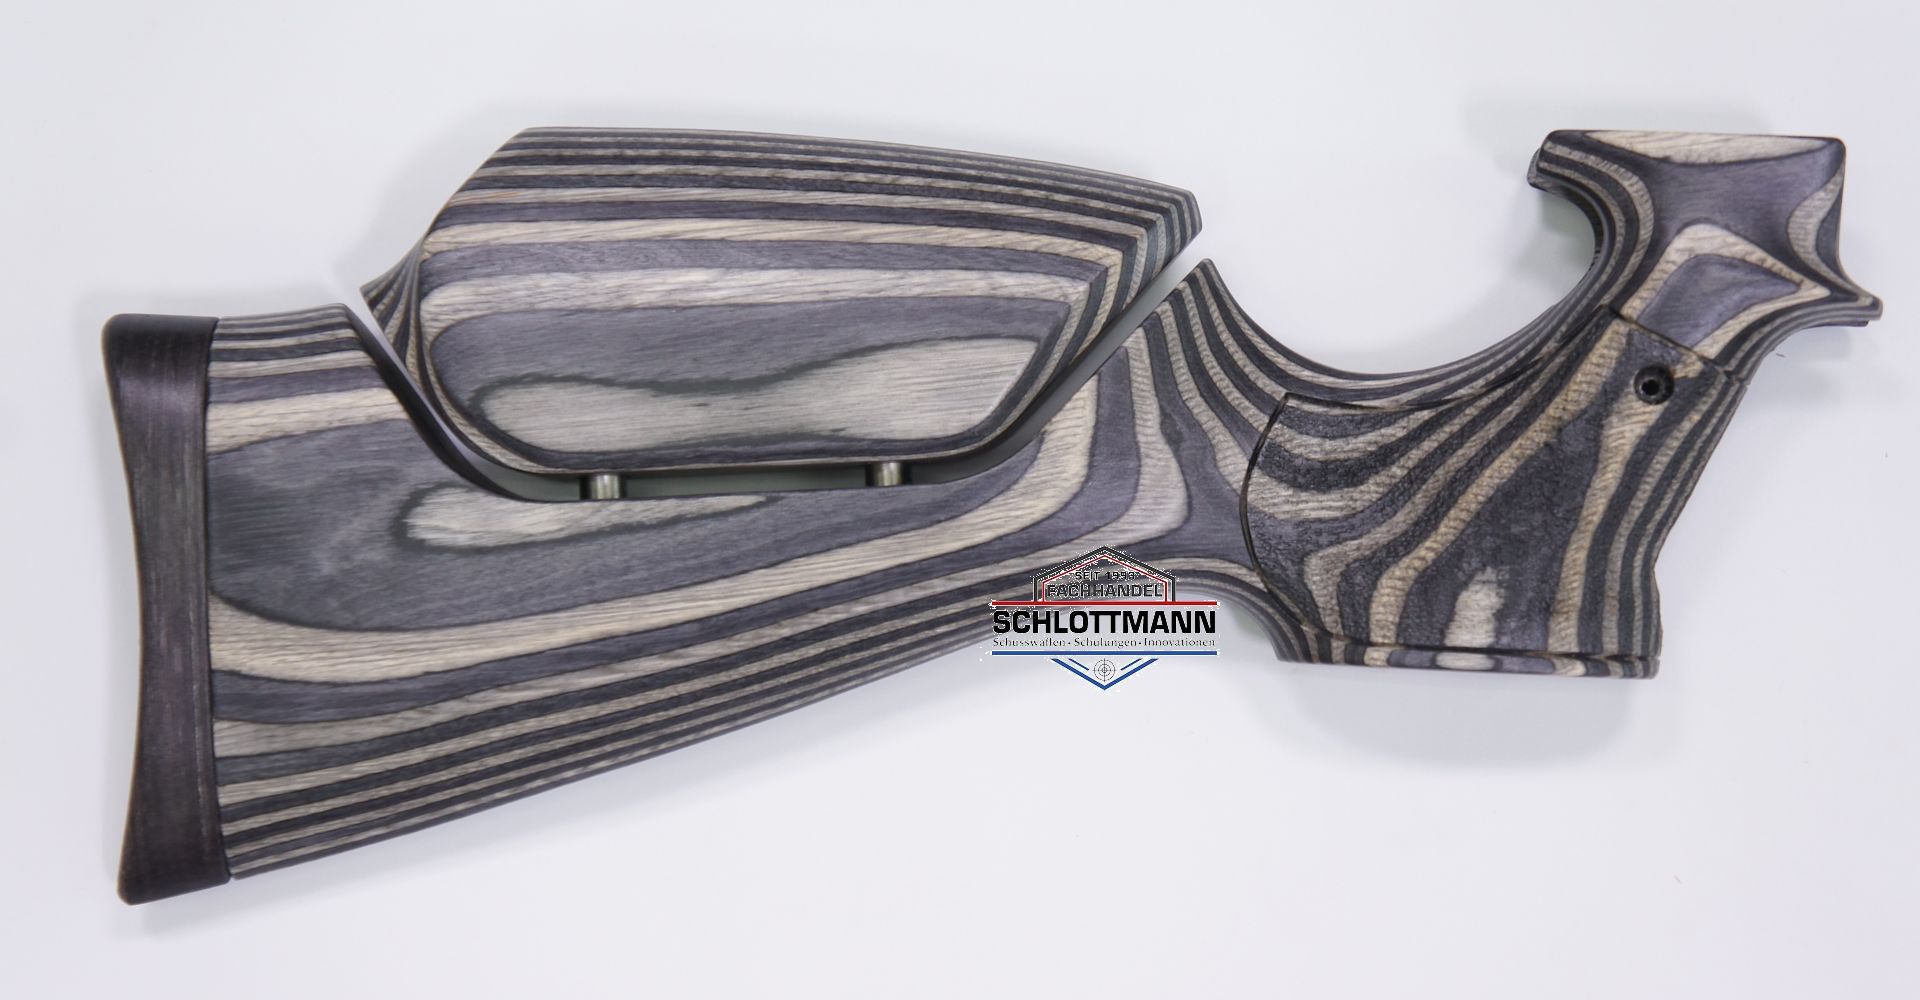 Anschlagschaft für CO2 Pistole Diana Airbug aus schwarz-grauem Schichtholz mit verstellbarer Schaftbacke